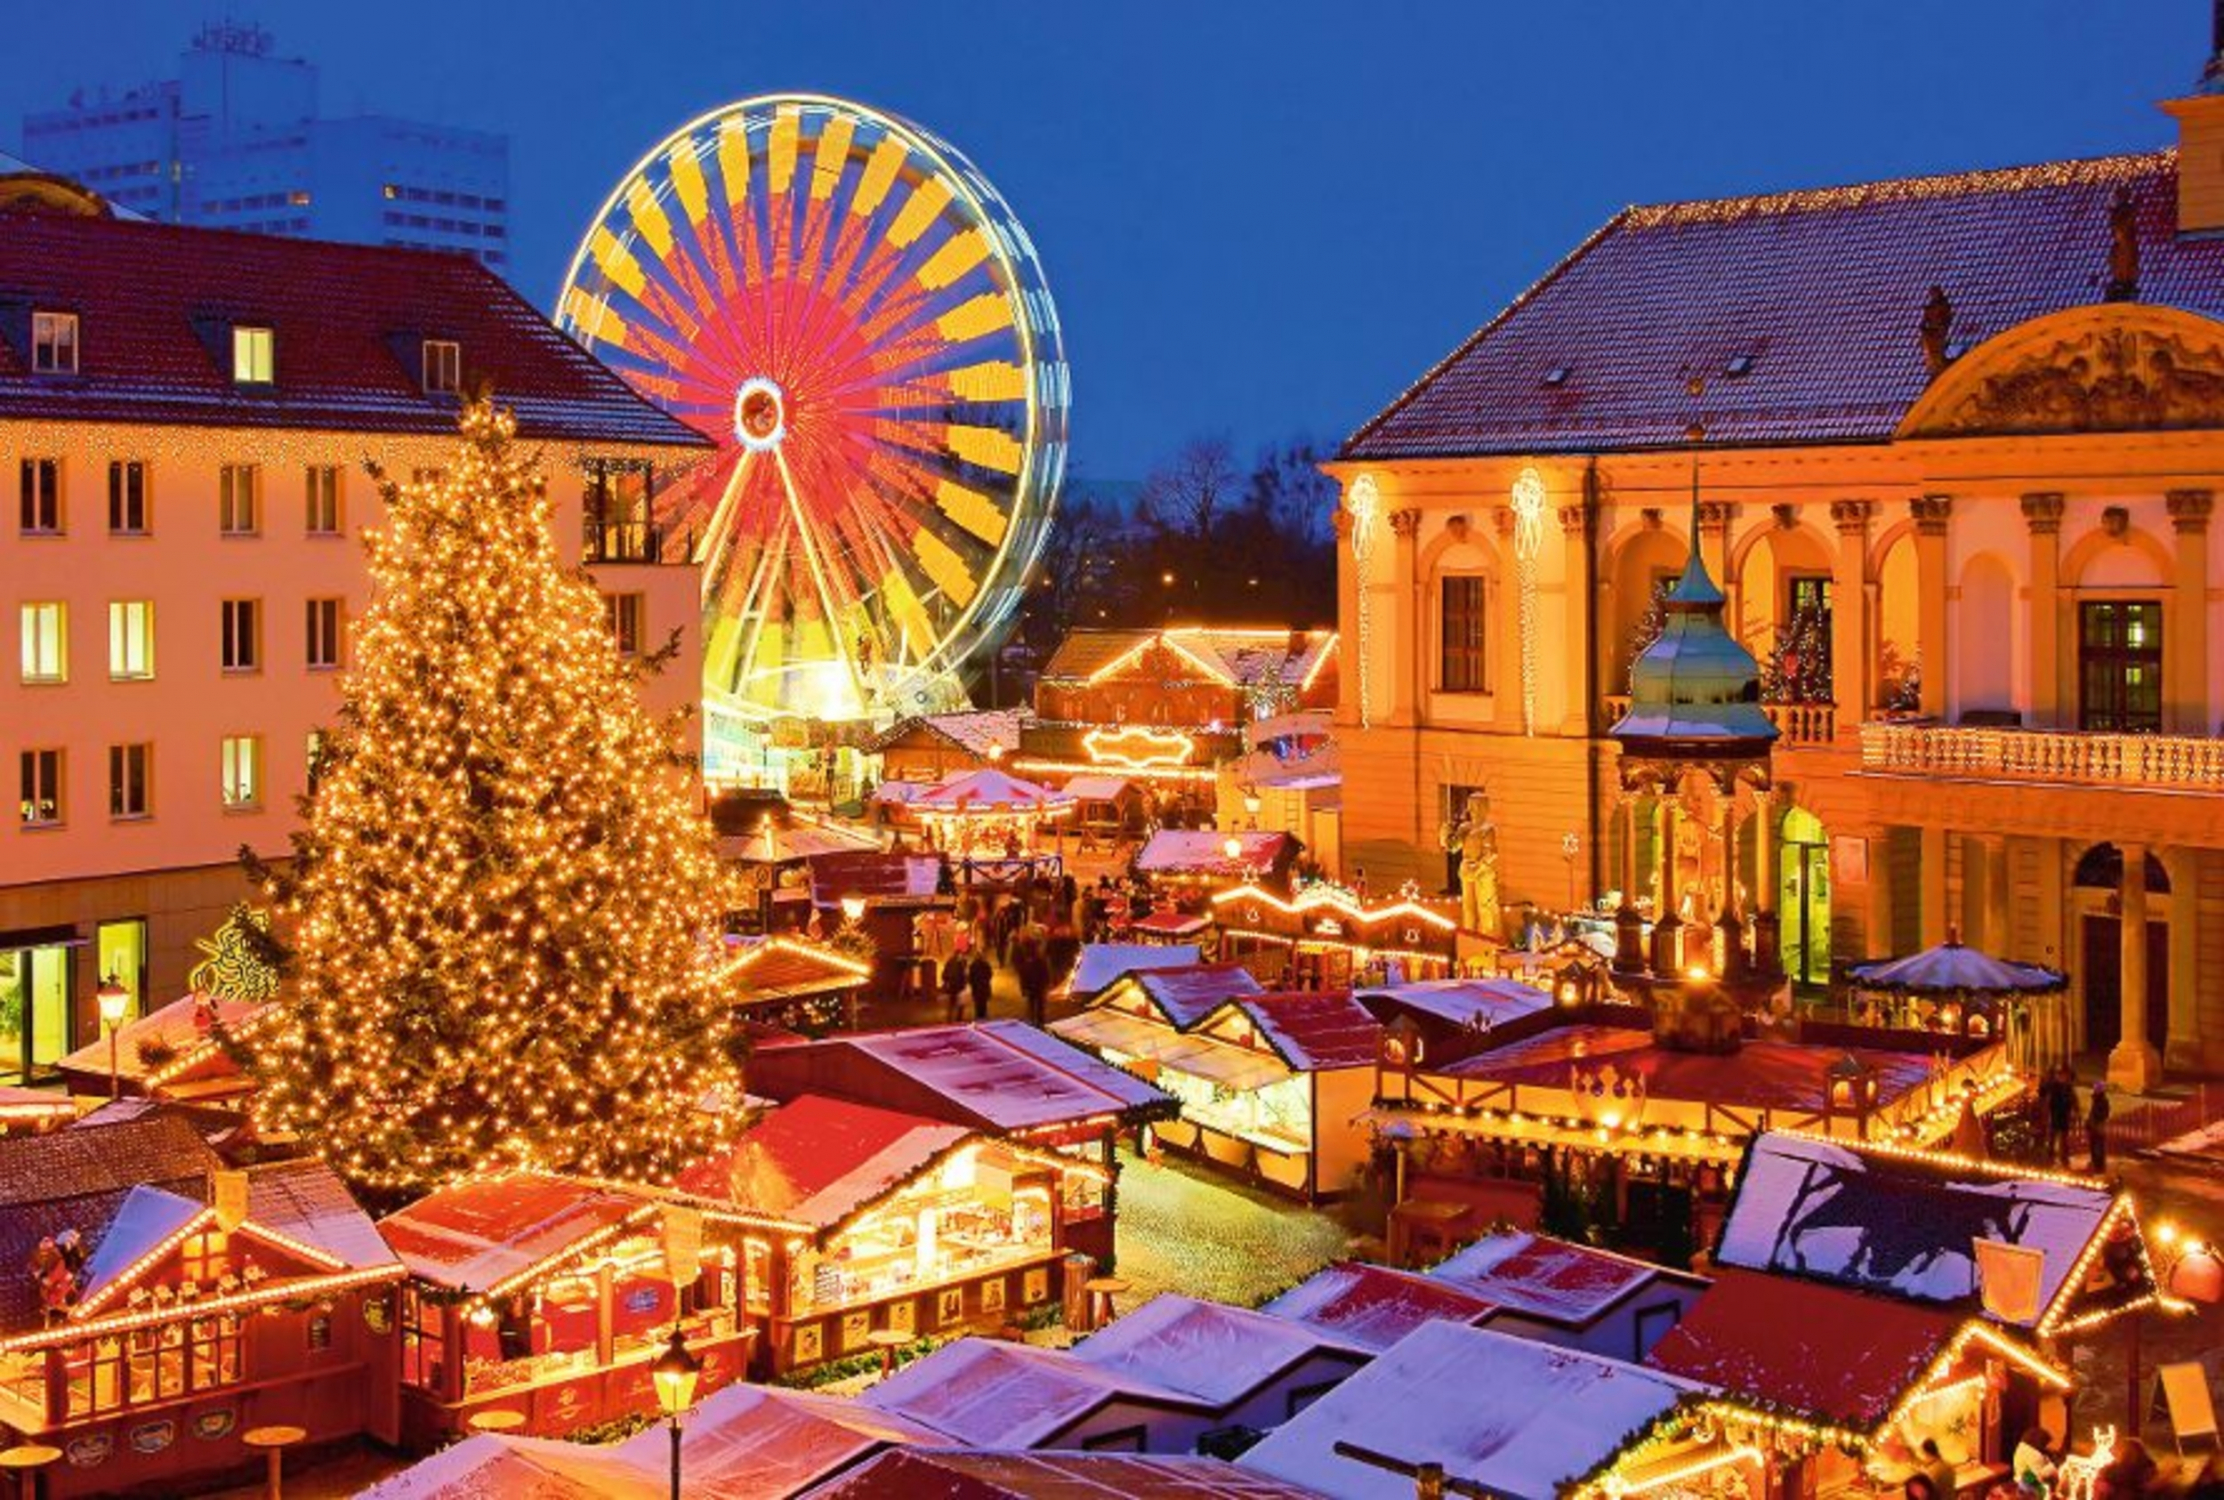 Magdeburg Weihnachtsmarkt - Magdeburg christmas market 03